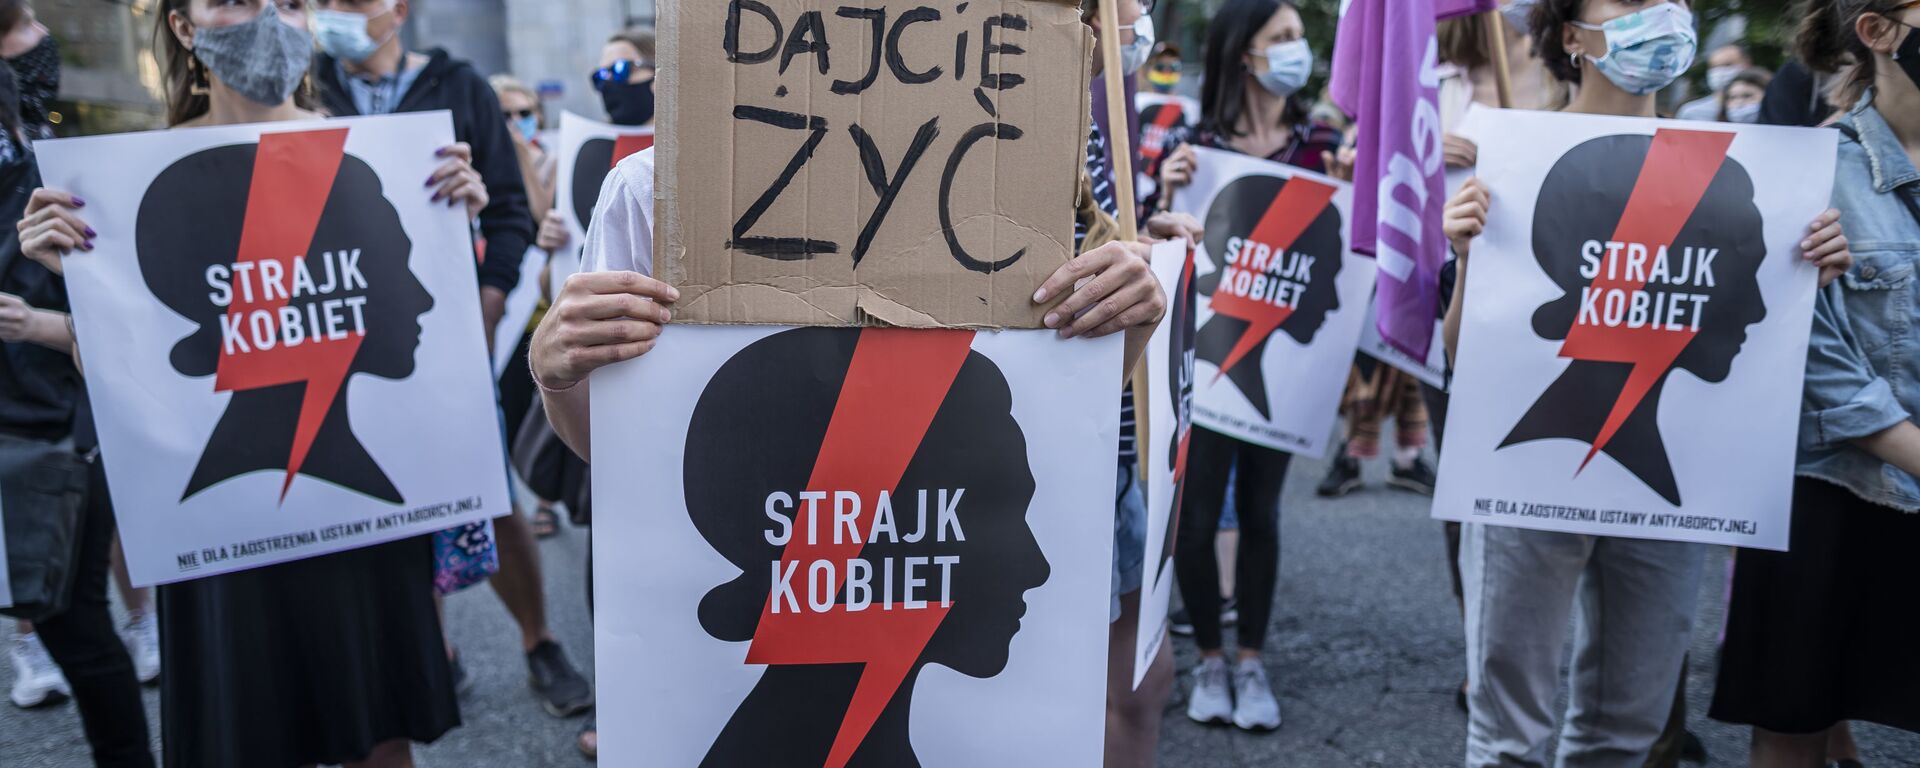 Polonya'nın başkenti Varşova'da aşırı muhafazakar hükümetin İstanbul Sözleşmesi'nden çekilme kararını protesto eden kadınlar Bırakın yaşayalım, Kadın grevi yazılı pankartlar da açtı. - Sputnik Türkiye, 1920, 22.10.2021